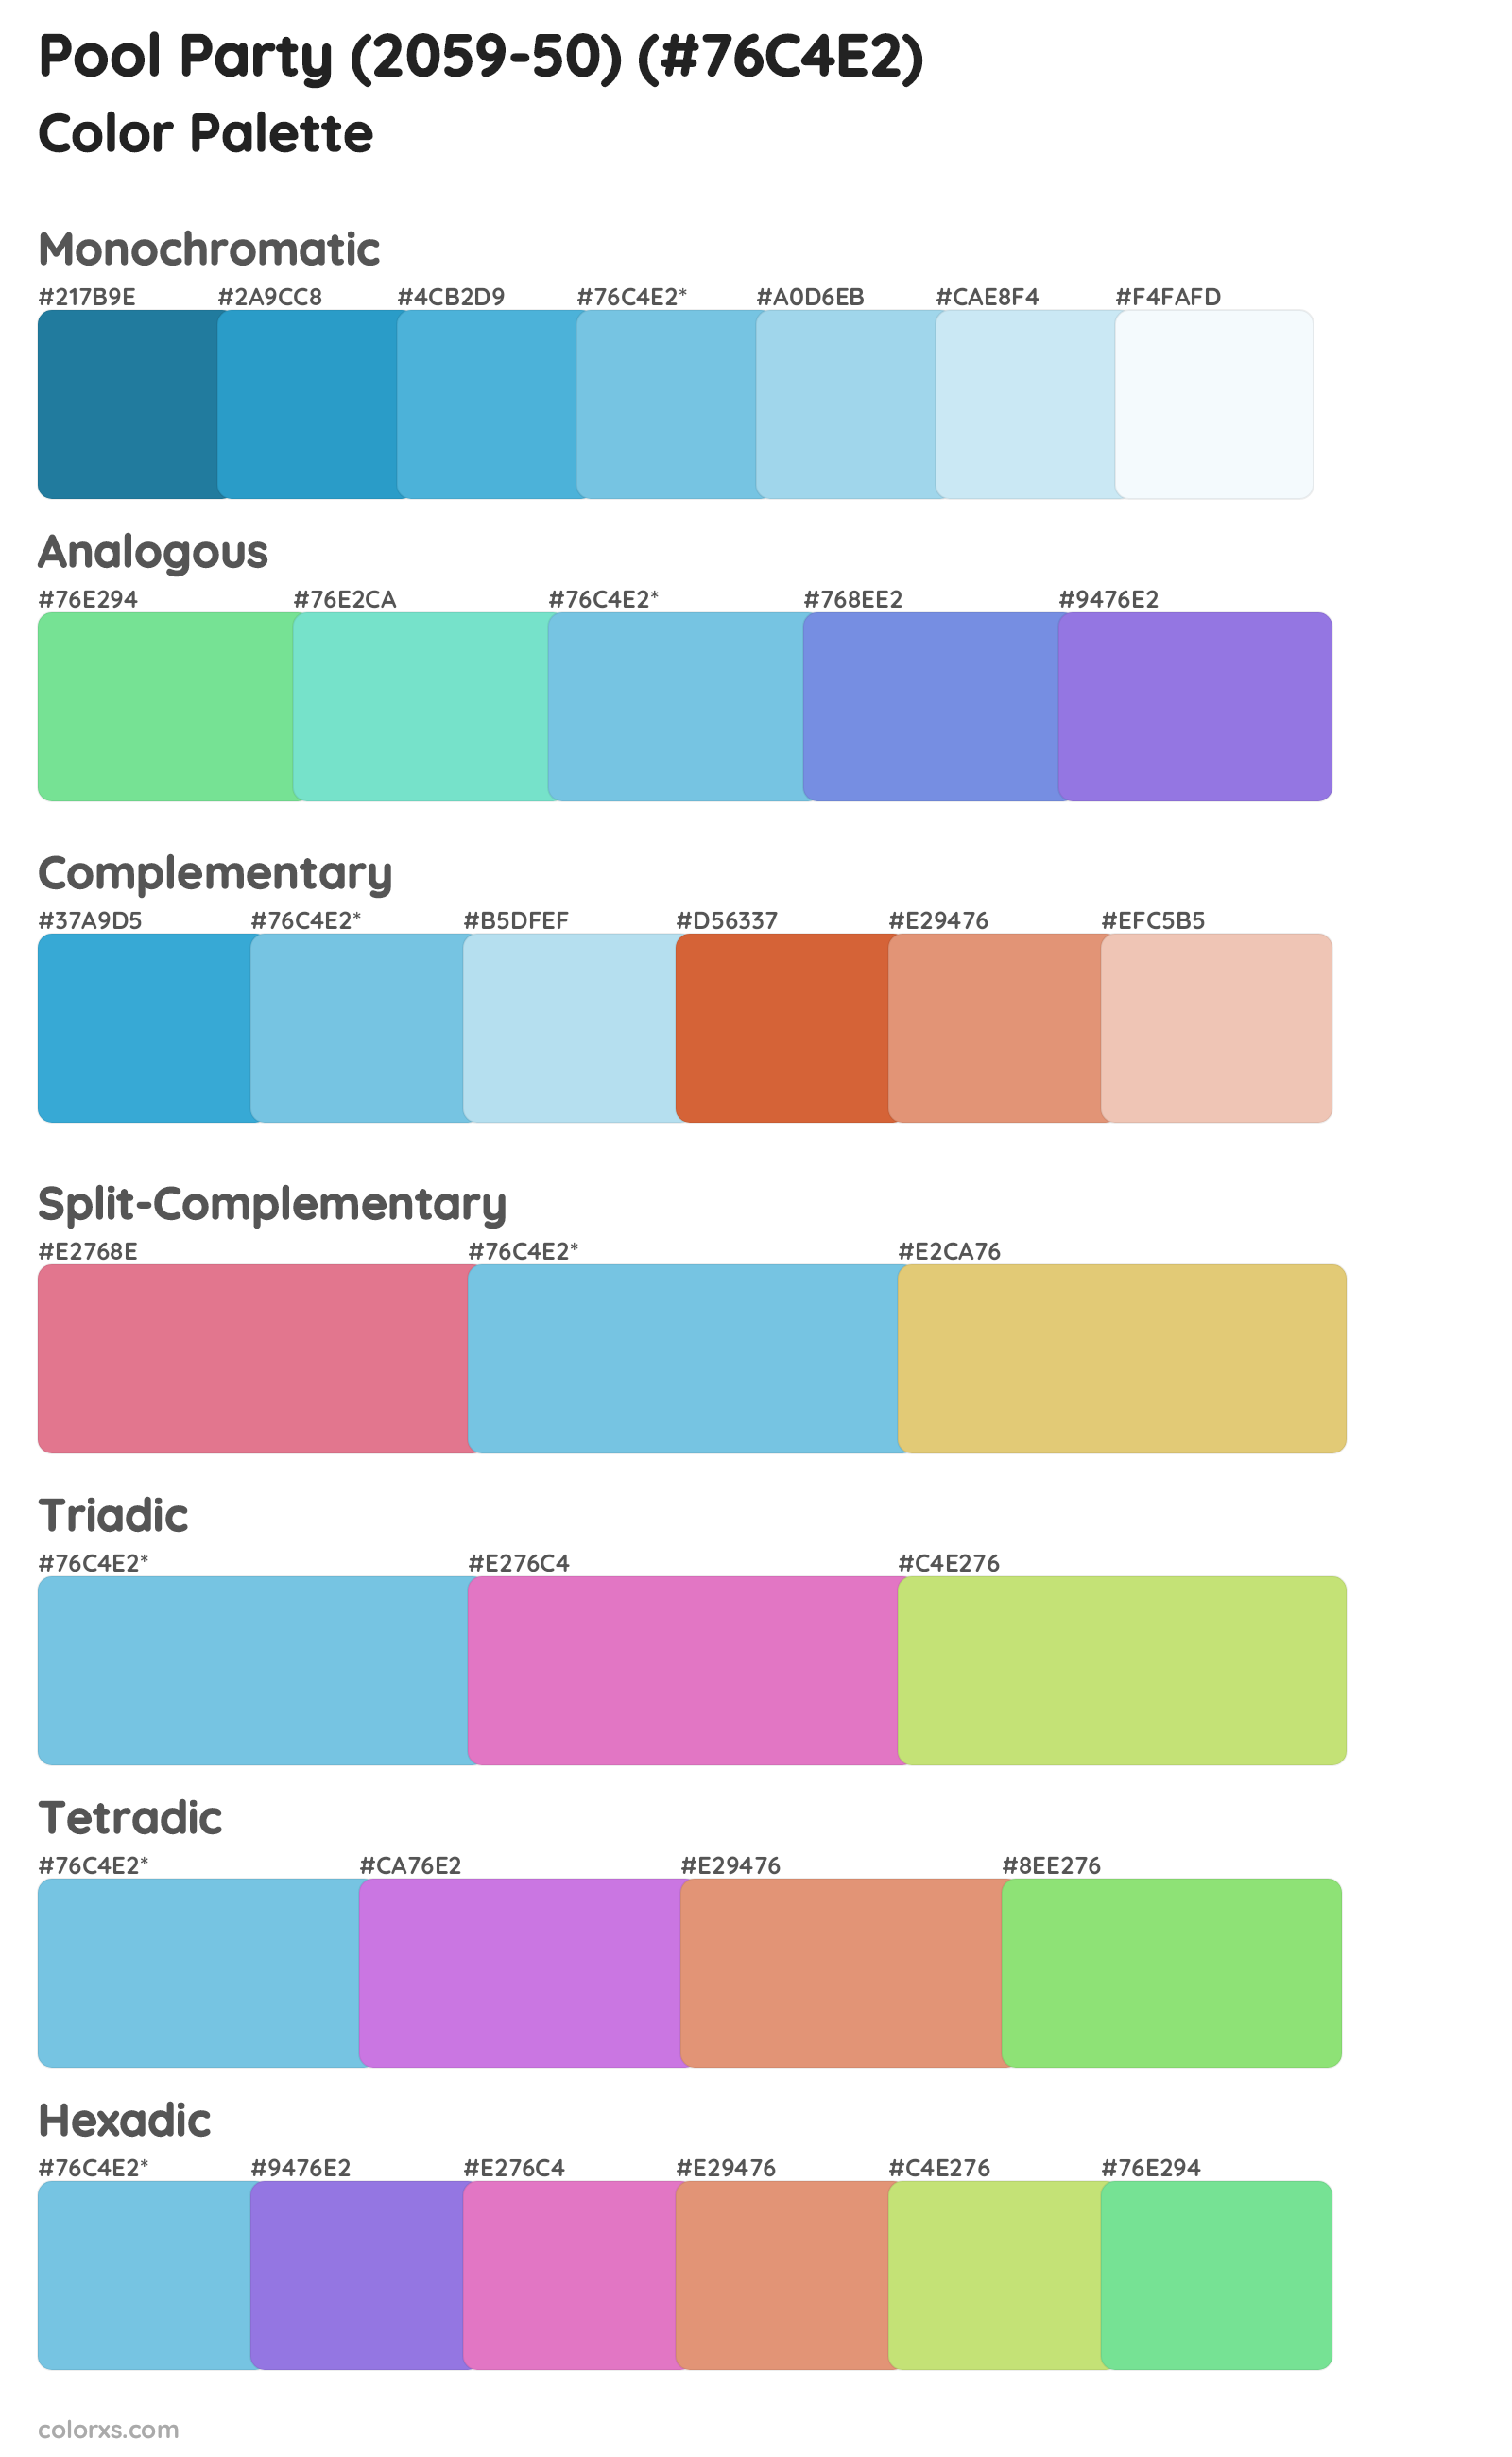 Pool Party (2059-50) Color Scheme Palettes